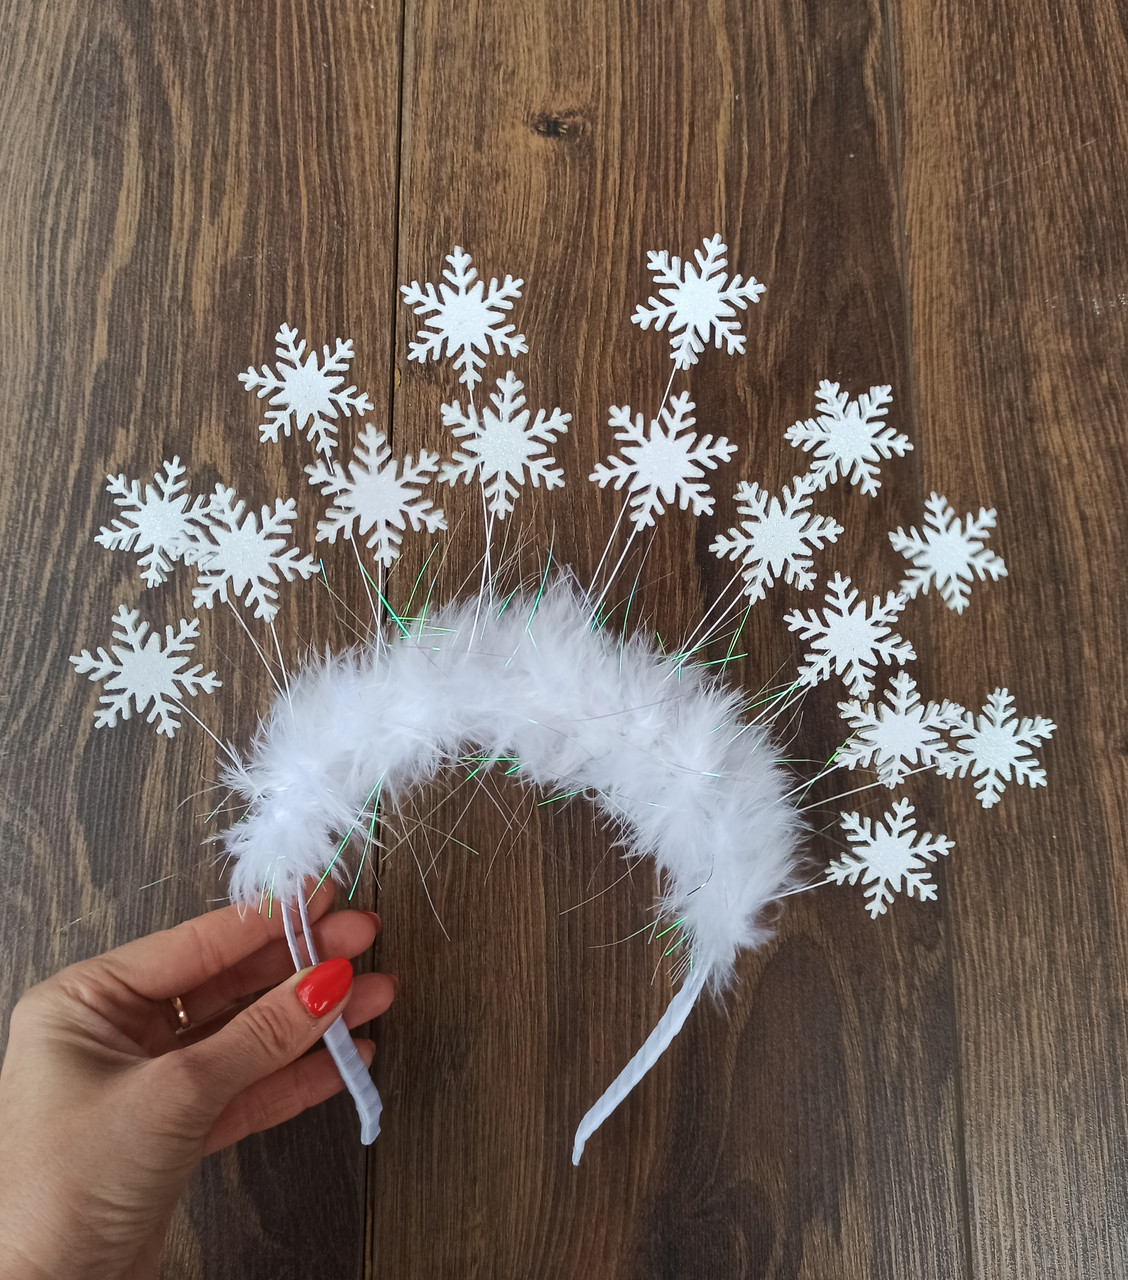 Обруч новорічний зі сніжинками для дітей. Корона сніжної королеви, Снігуроньки, сніжинки